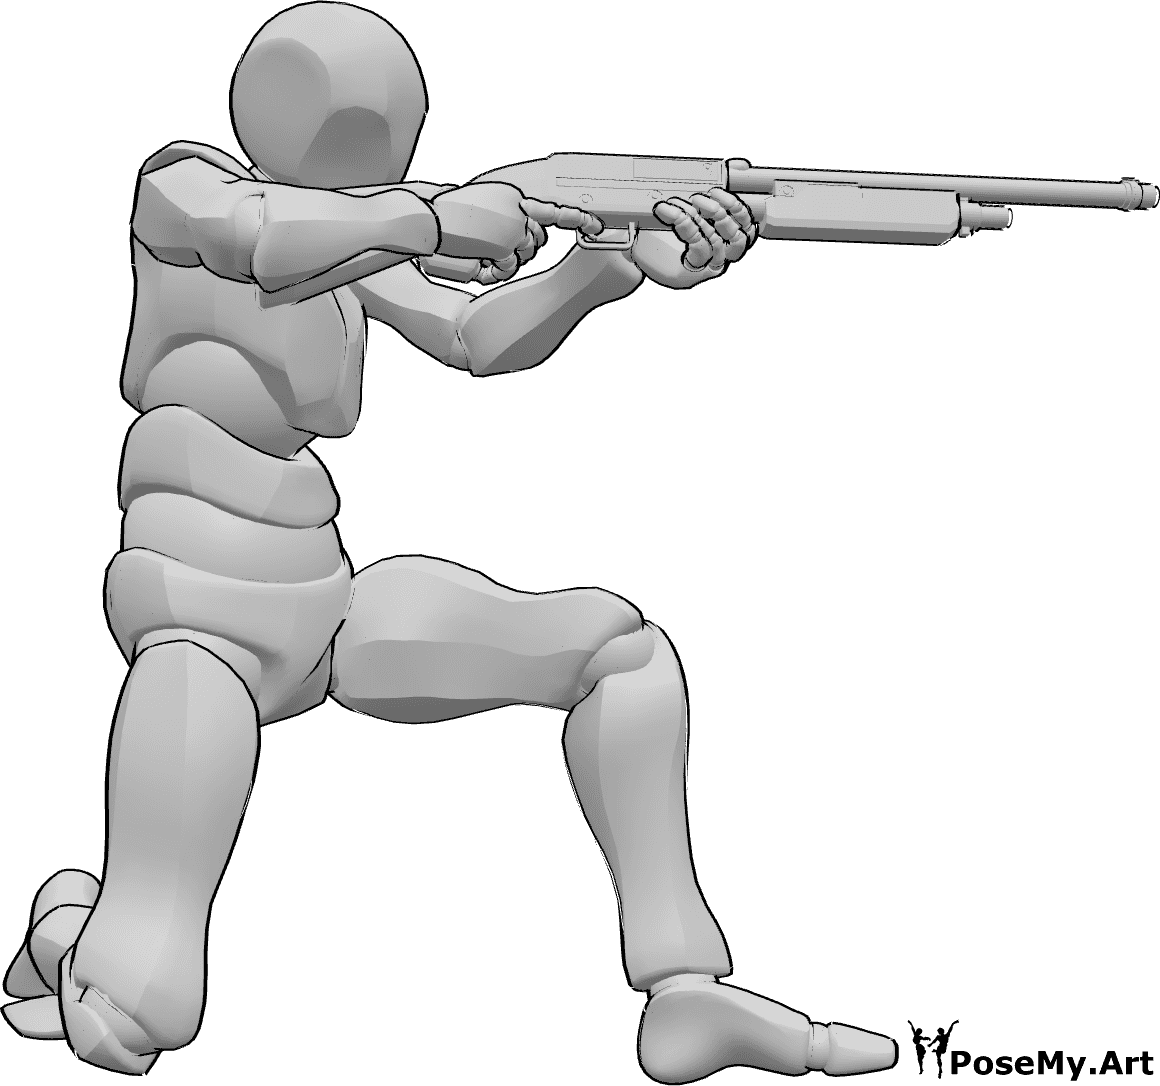 Referência de poses- Pose de tiro com caçadeira - Homem ajoelhado, segurando a caçadeira com as duas mãos, fazendo pose de pontaria e disparando